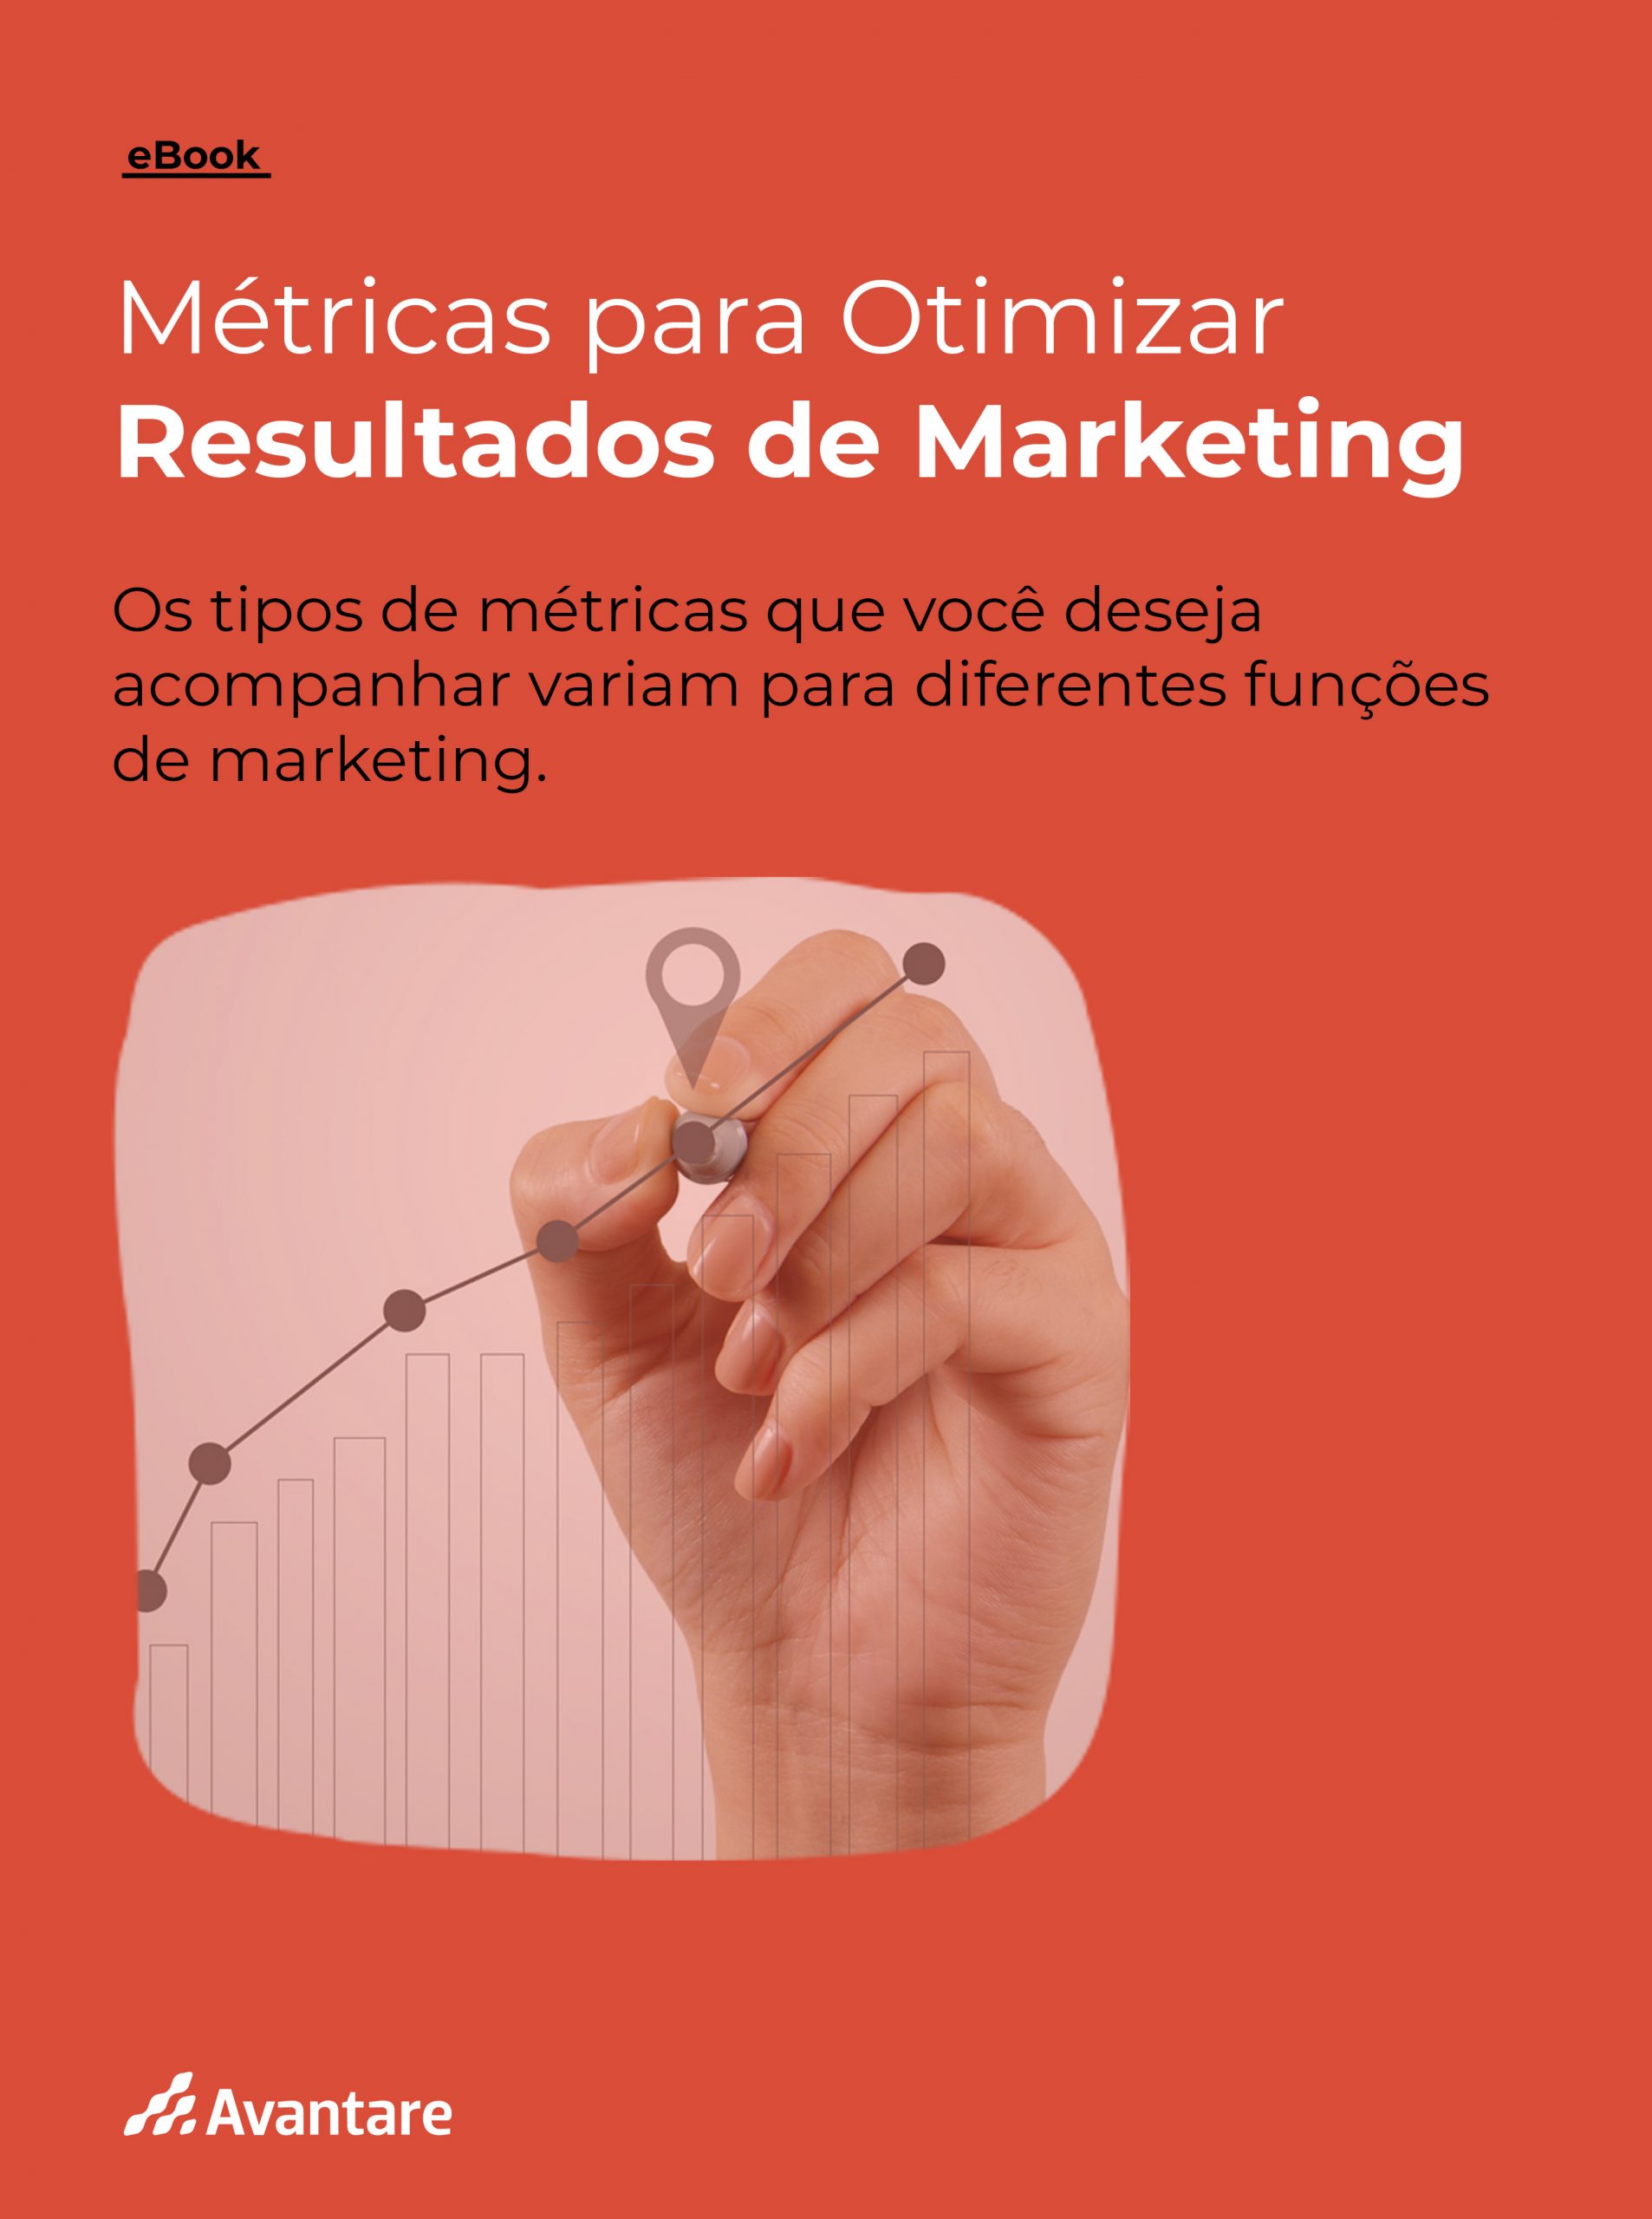 E-book_Métricas_para_Otimizar_Resultados_de_Marketing